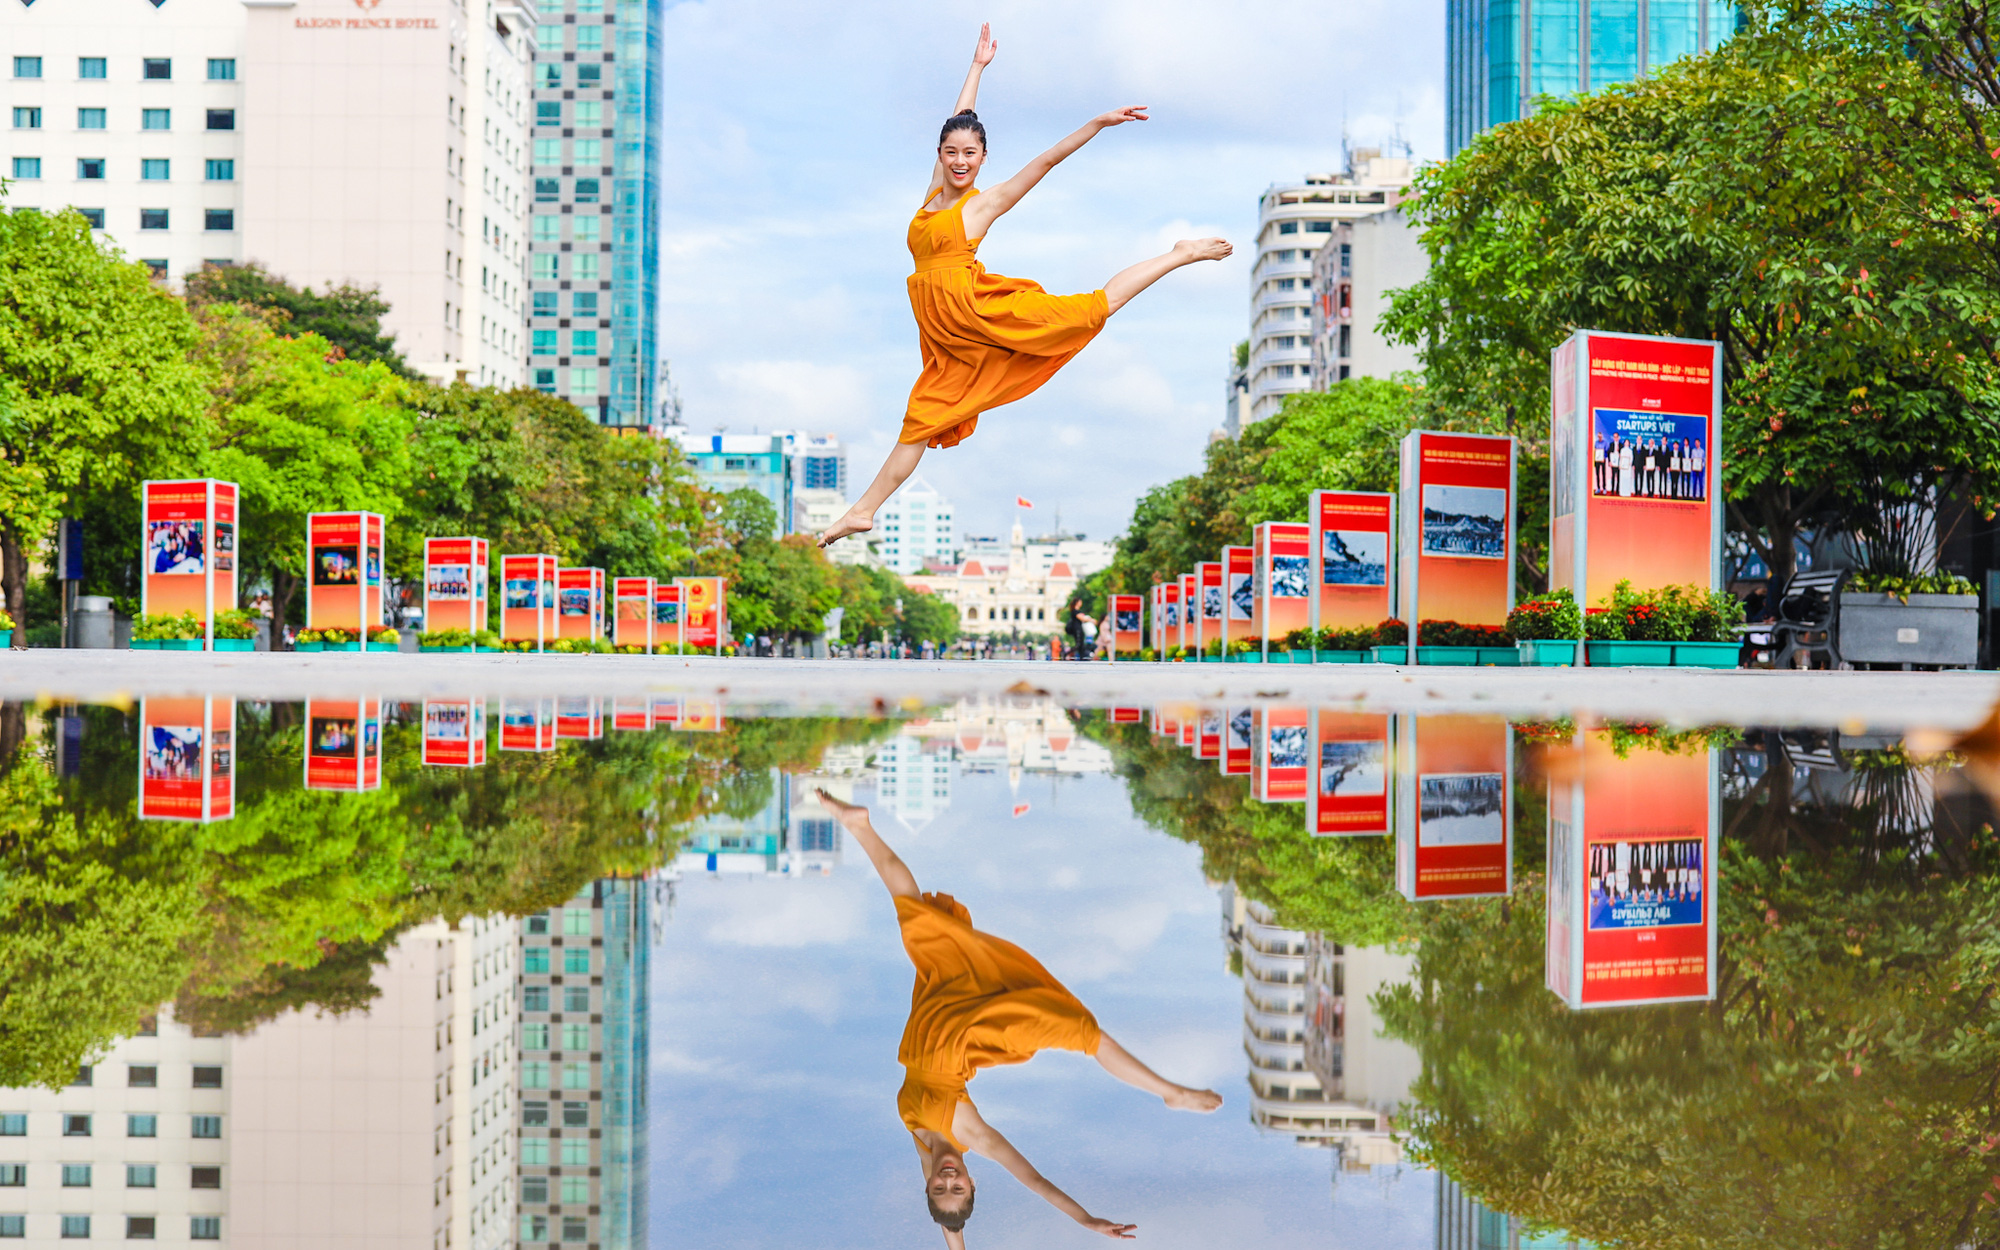 Dạo một vòng TP Hồ Chí Minh cùng blogger du lịch nổi tiếng